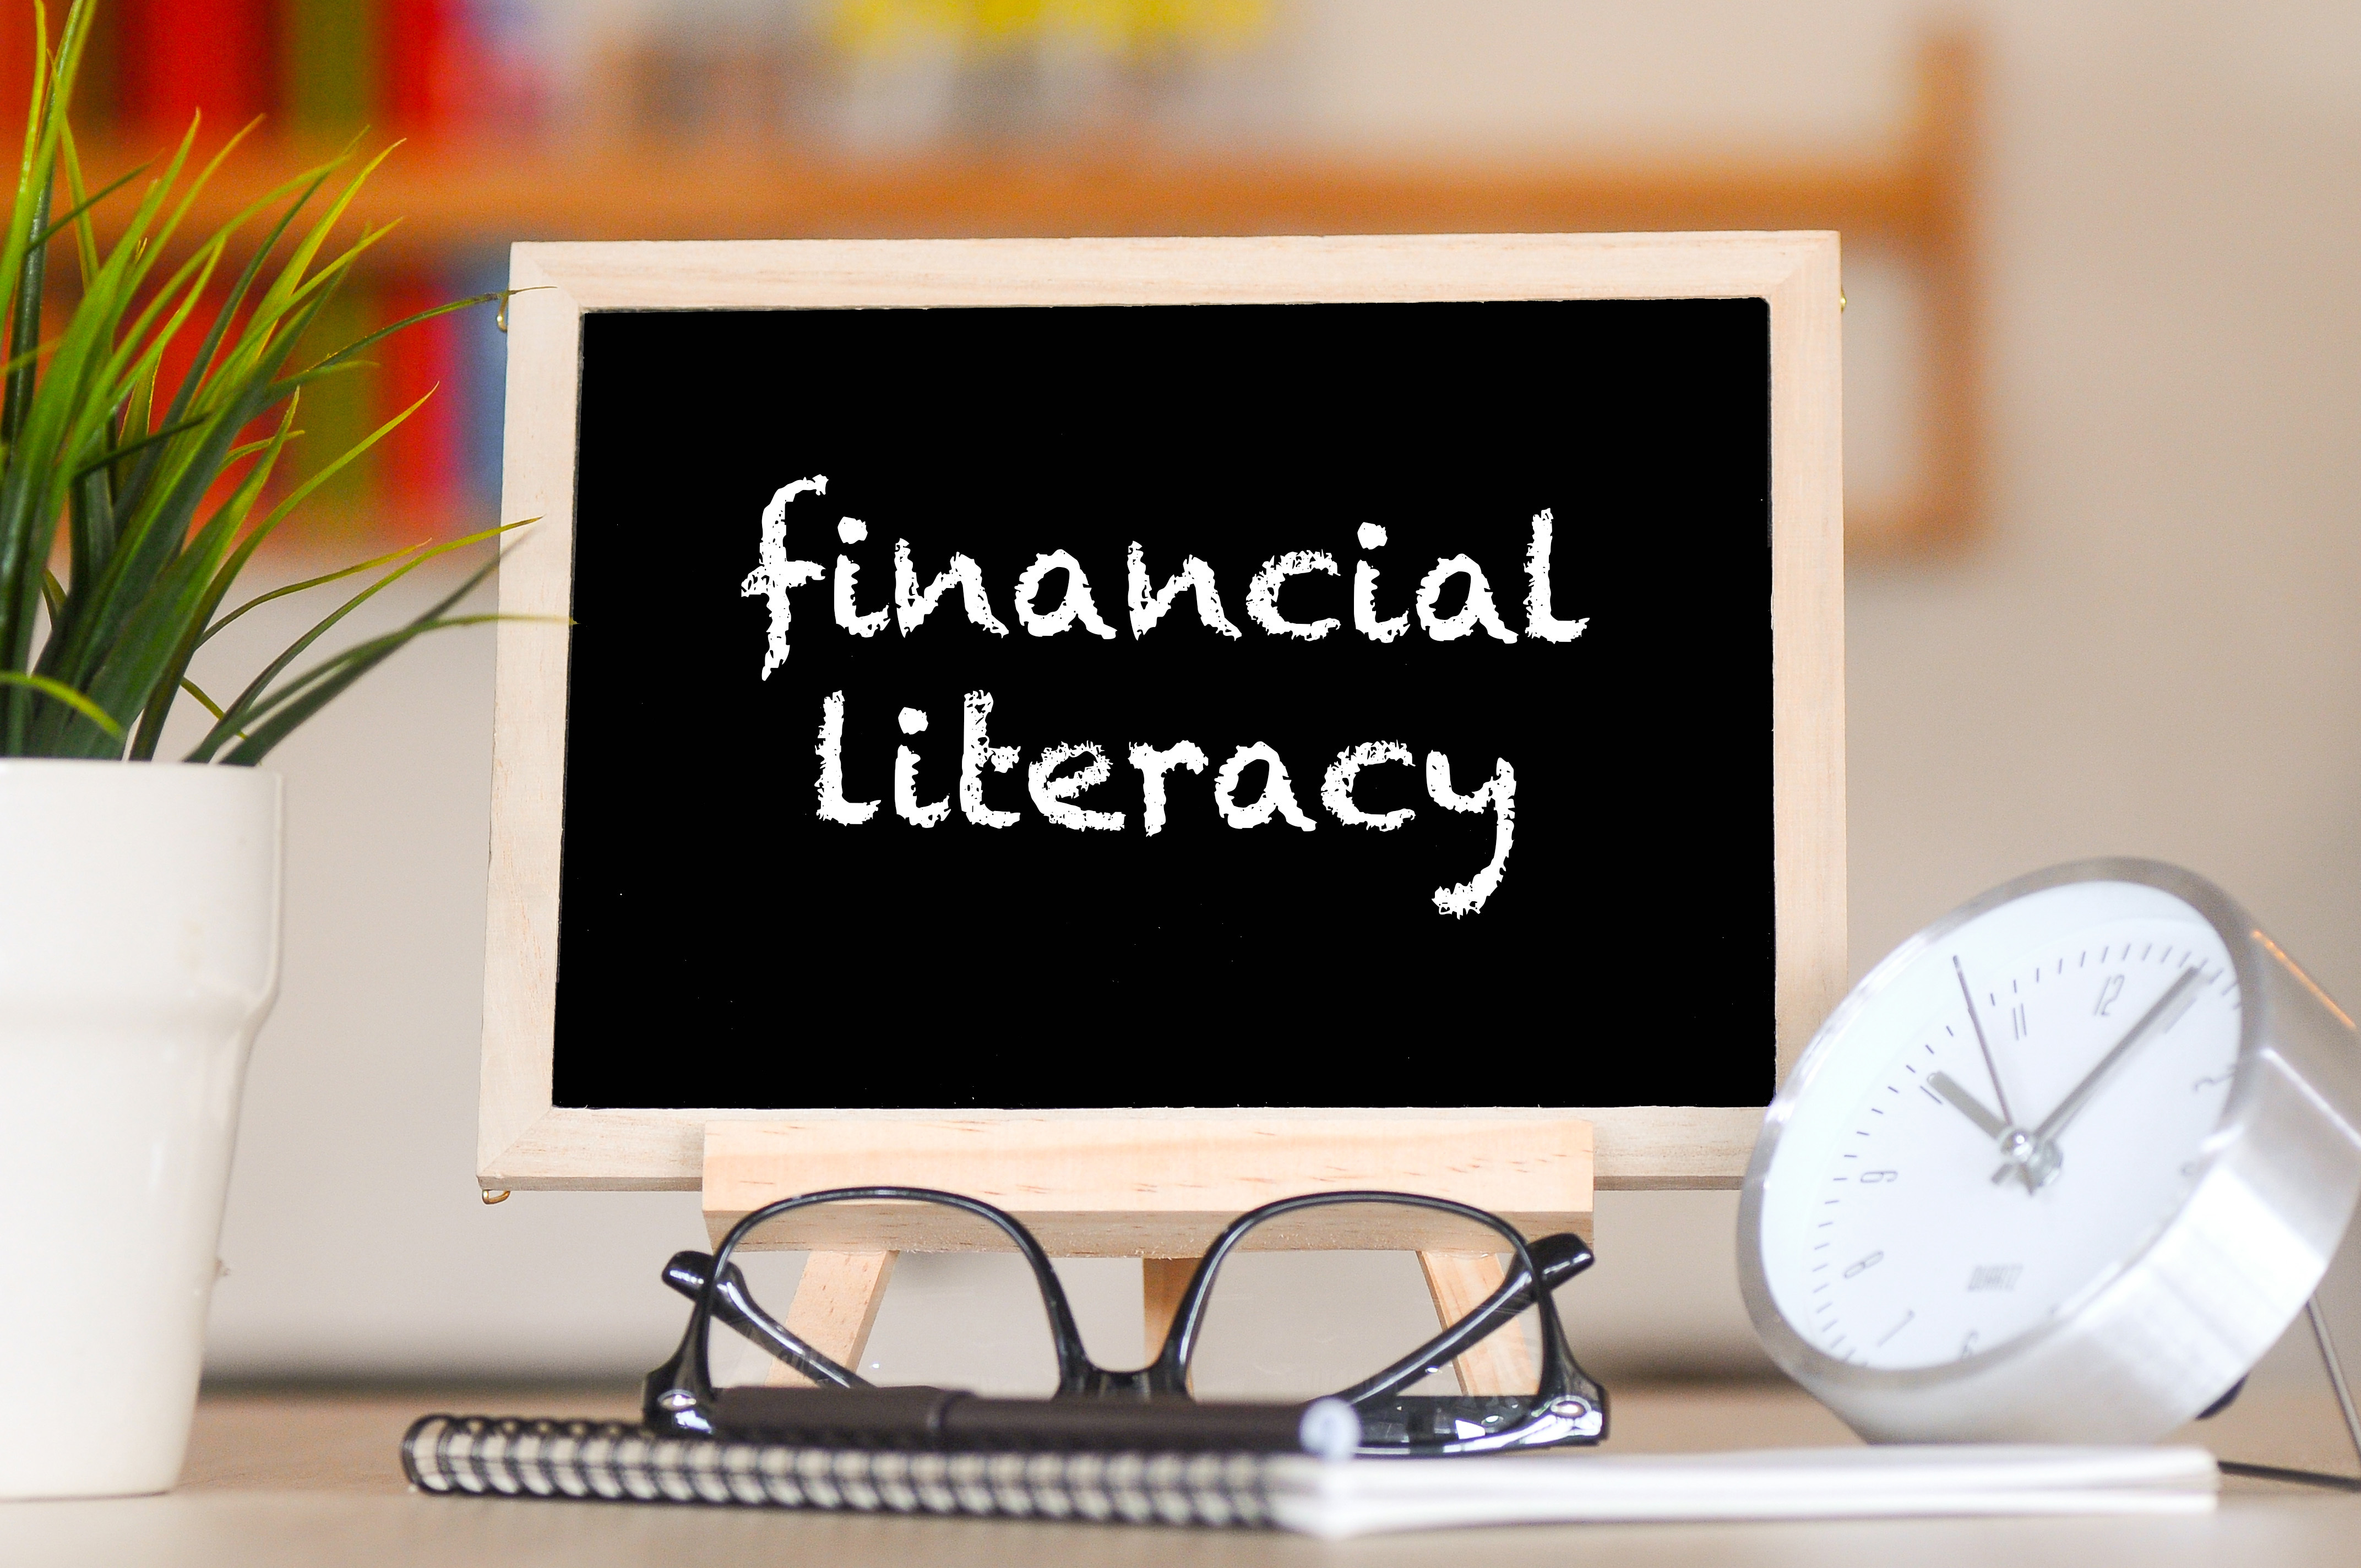 Financial literacy written on chaulkboard